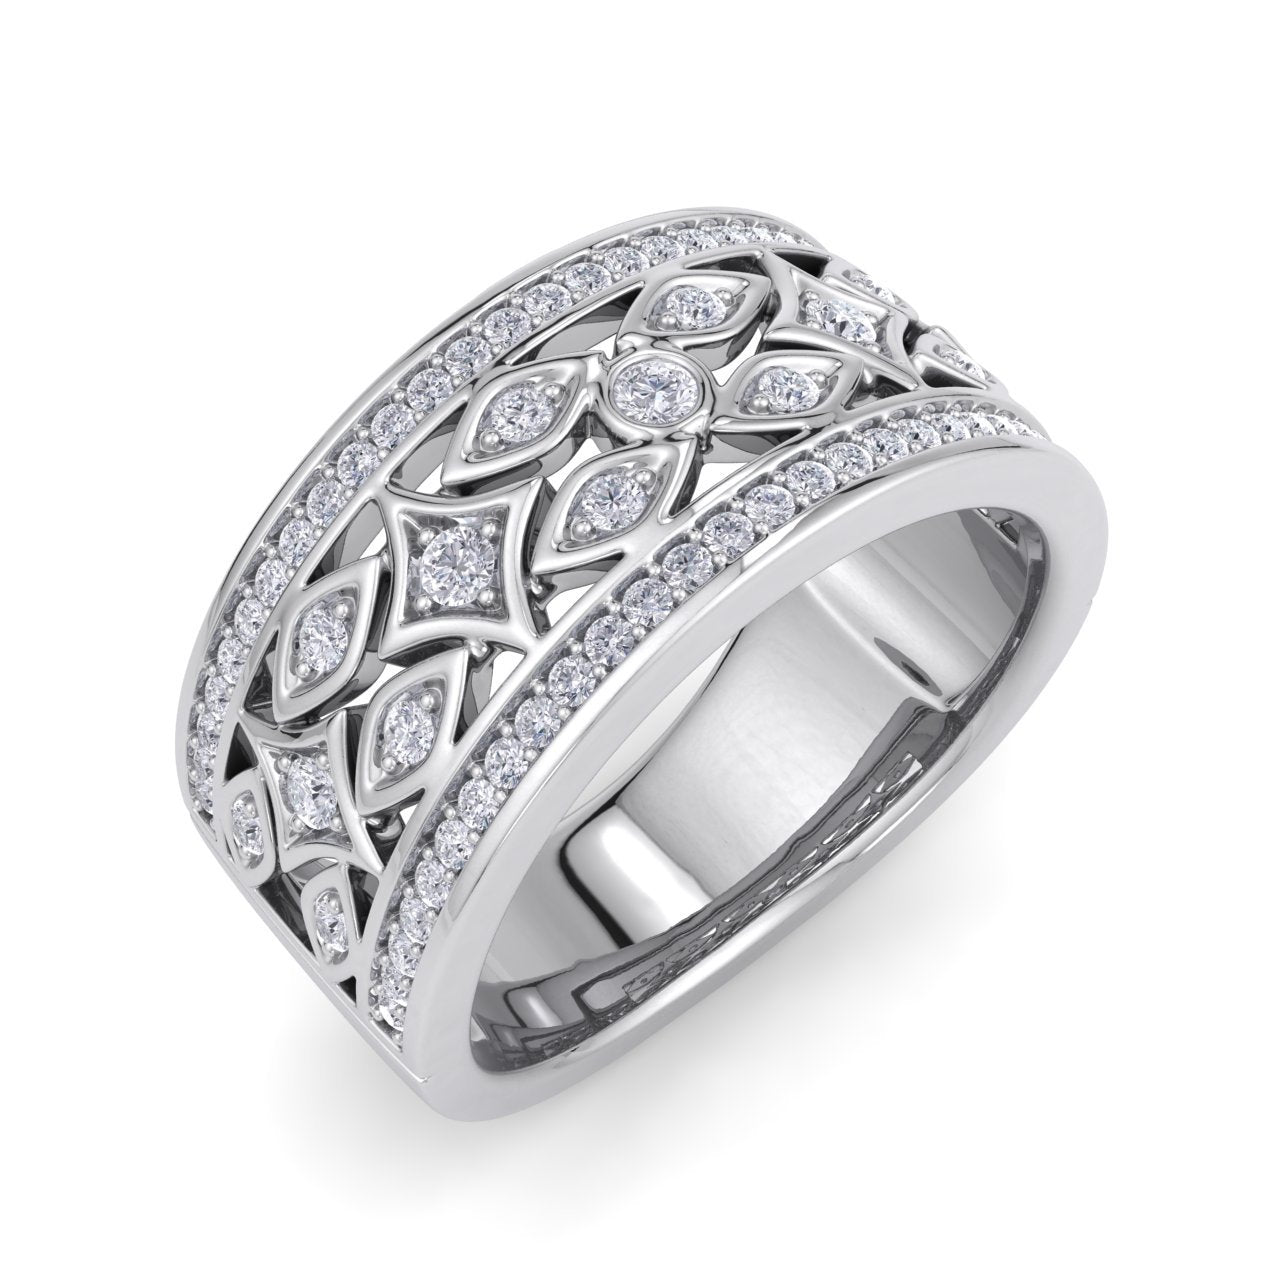 Joyalukkas Diamond Ring 18kt White Gold ring Price in India - Buy  Joyalukkas Diamond Ring 18kt White Gold ring online at Flipkart.com